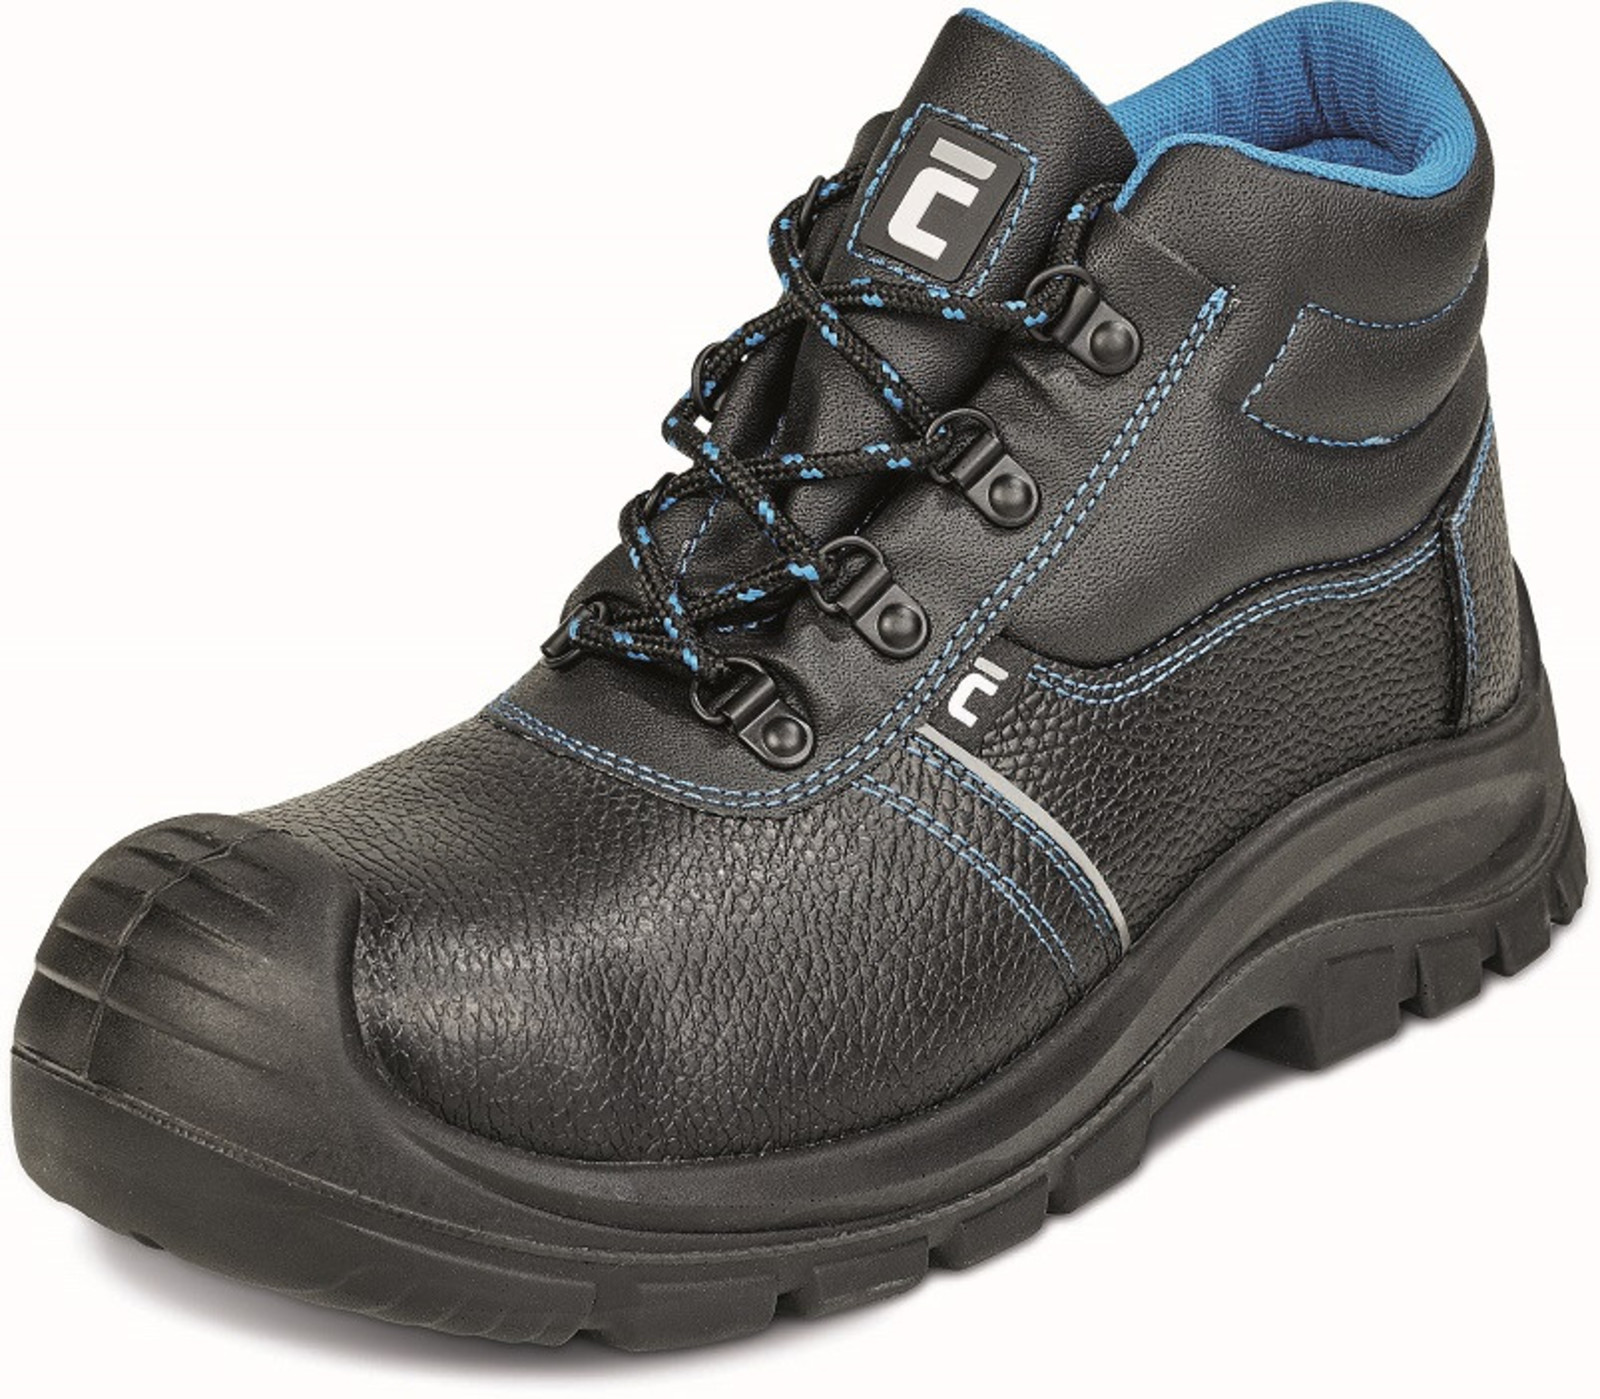 Pracovná obuv Cerva XT O1 - veľkosť: 44, farba: čierna